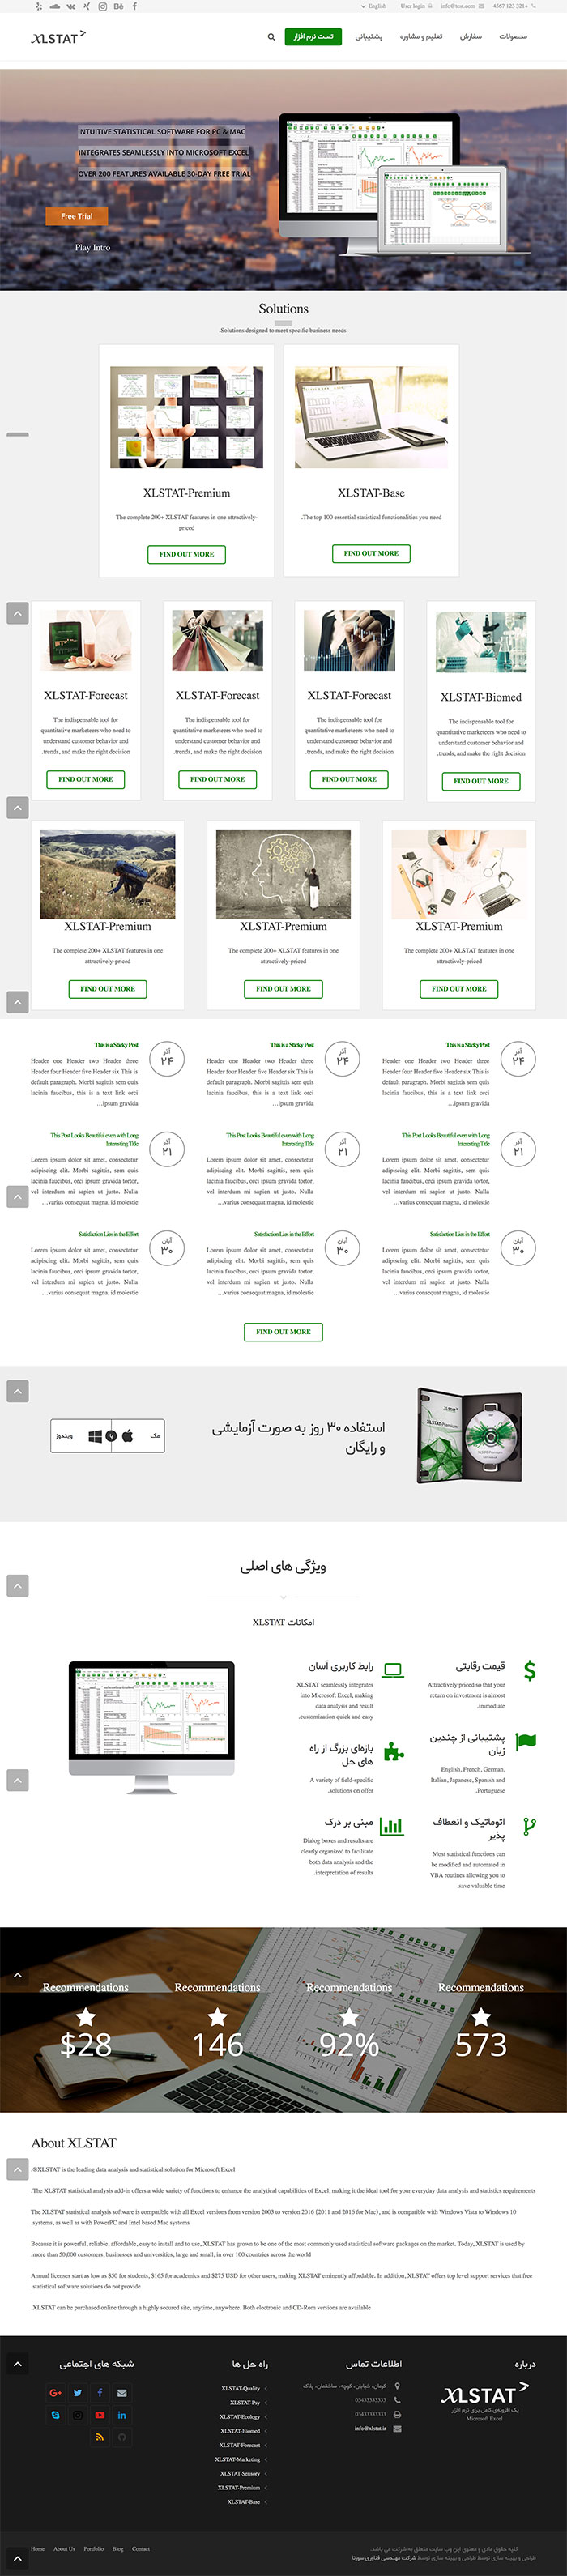 طراحی سایت نرم افزار تحلیل داده توسط شرکت طراحی سایت سورنا در کرمان